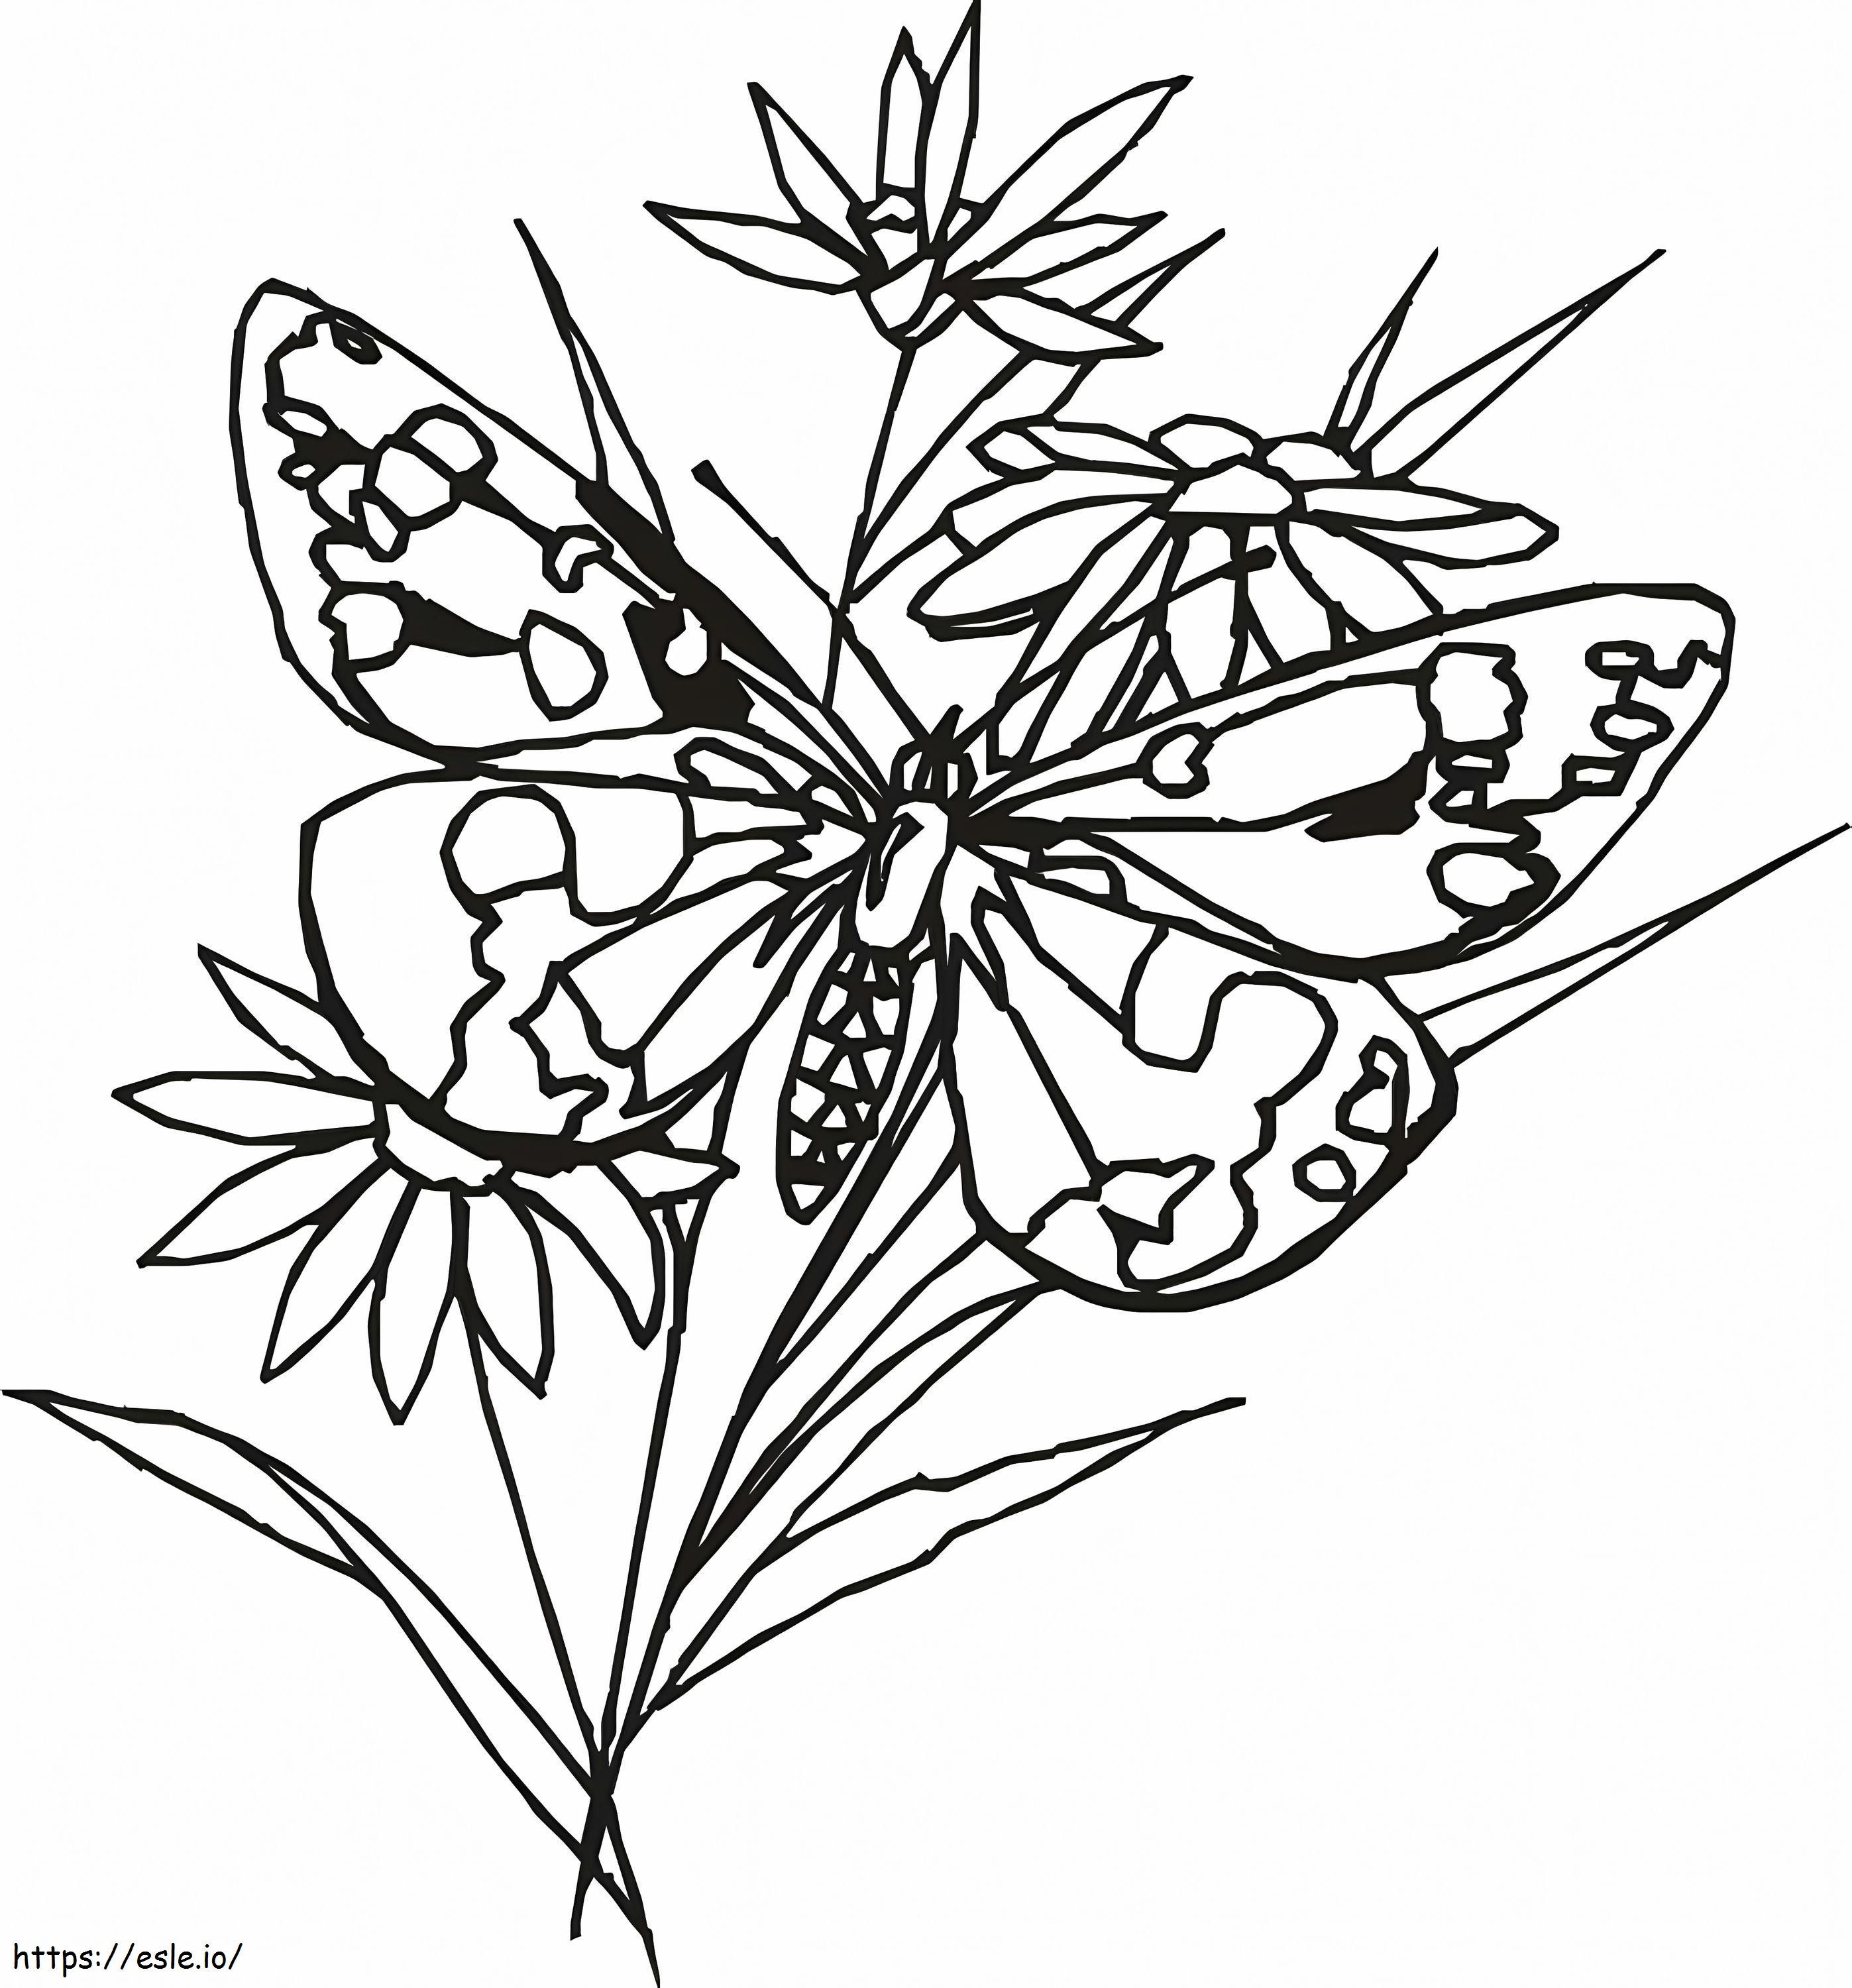 Coloriage Papillon 1 1 954X1024 à imprimer dessin